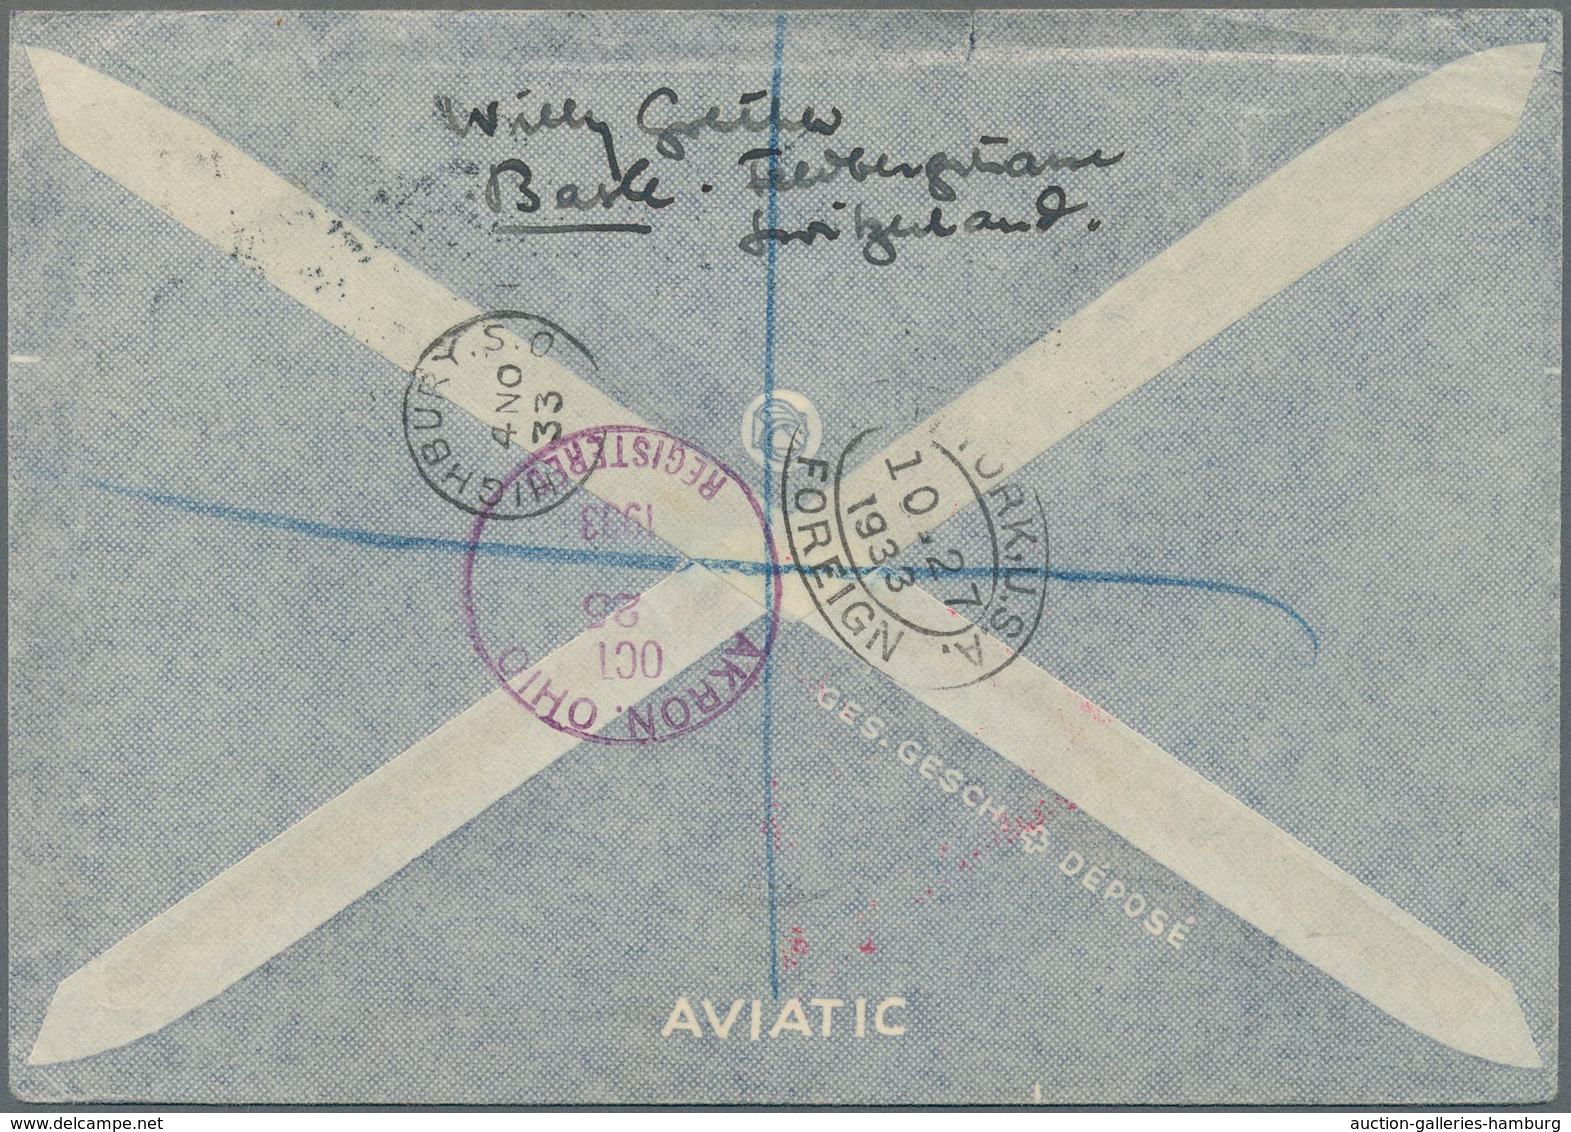 Zeppelinpost Europa: 1933, Chicagofahrt, Schweizer Post, R-Brief Mit Besserer Frankatur, Aufgabestem - Andere-Europa